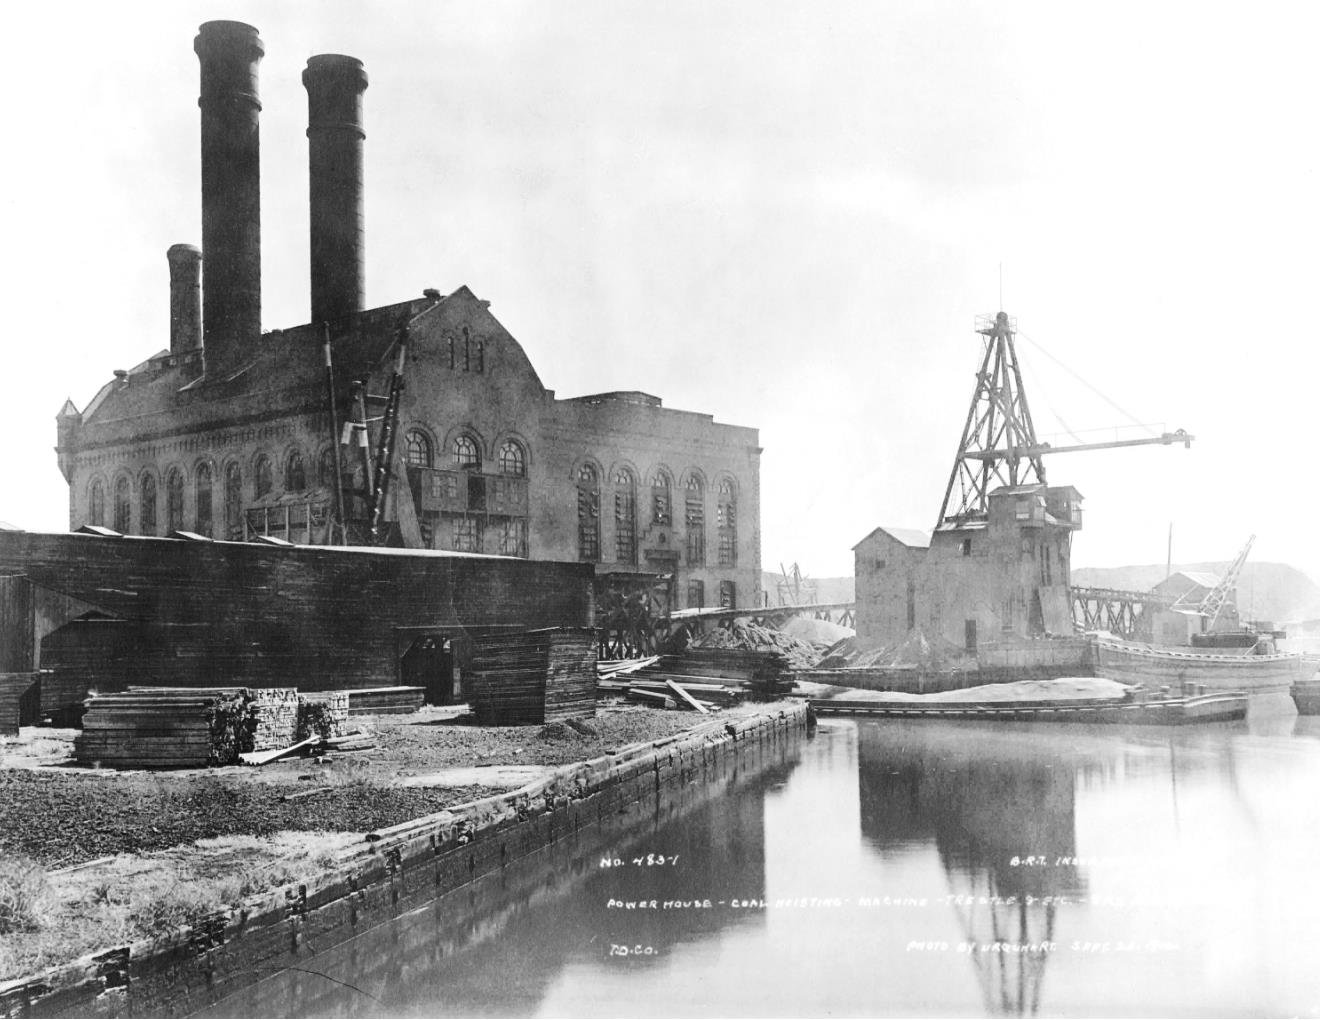 La centrale elettrica sul canale di Gowanus, foto d'epoca